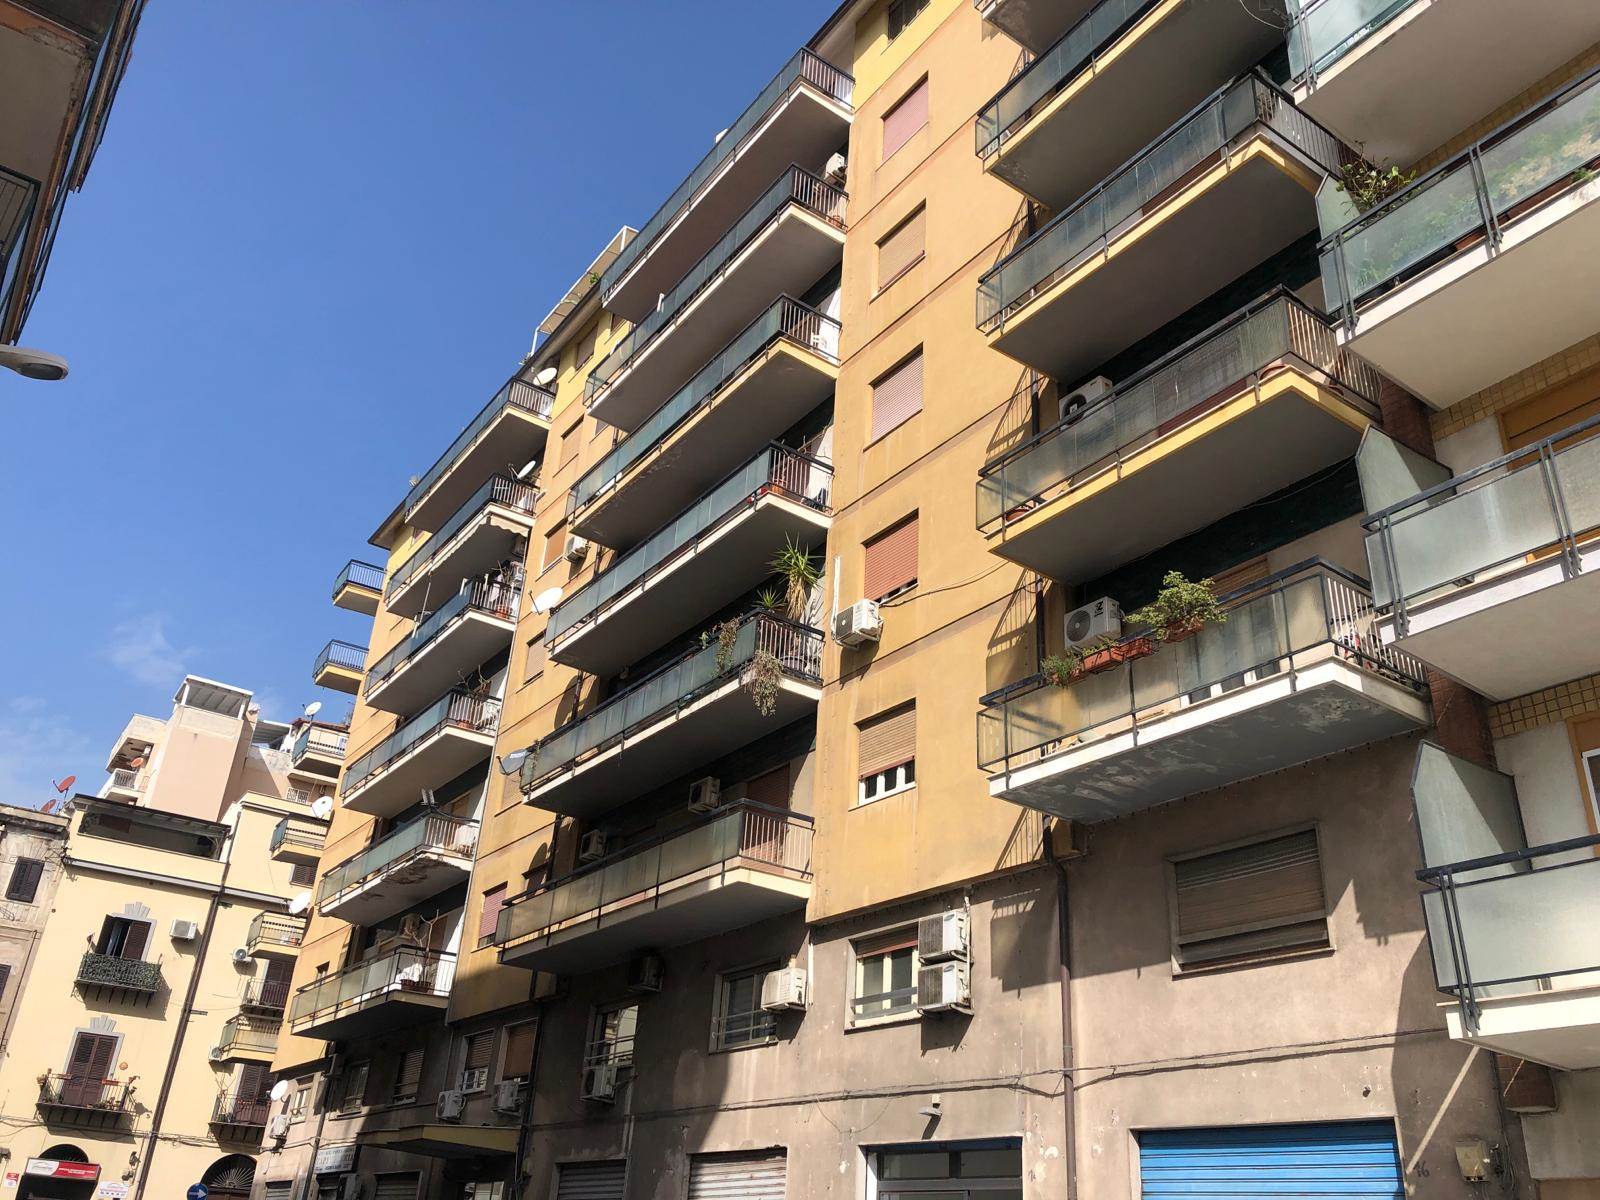 Bilocale in ottime condizioni in zona Cantieri a Palermo